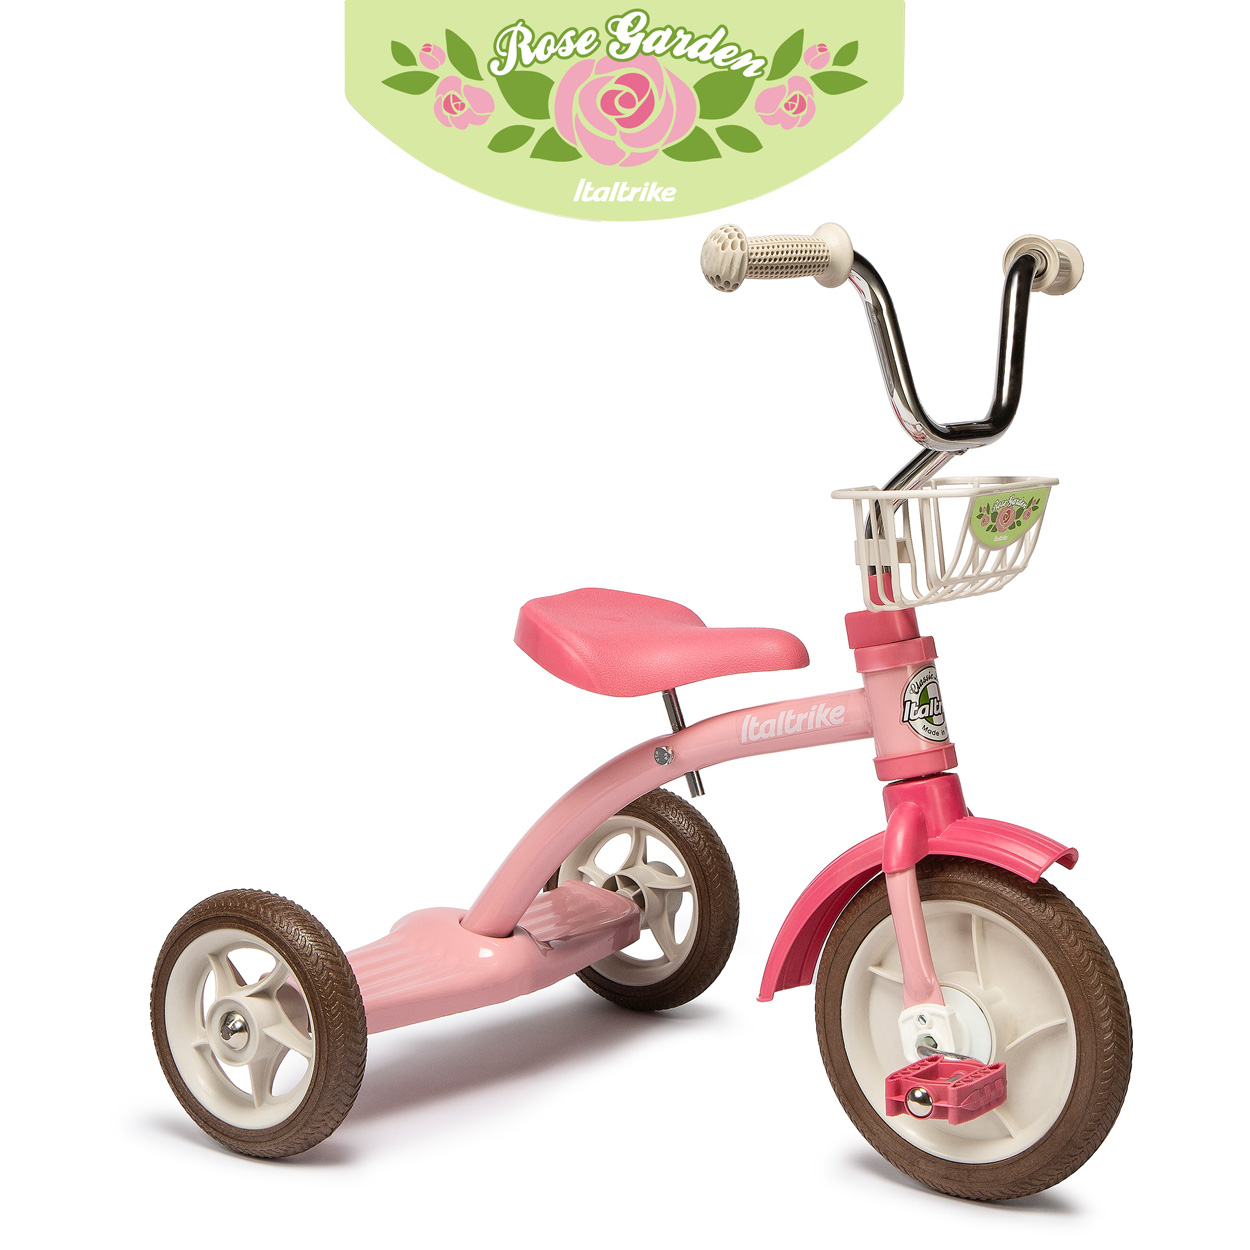 三輪車 子ども イタリア製 幼児 ベビー クラッシックライン スーパールーシー イタルトライク正規輸入品